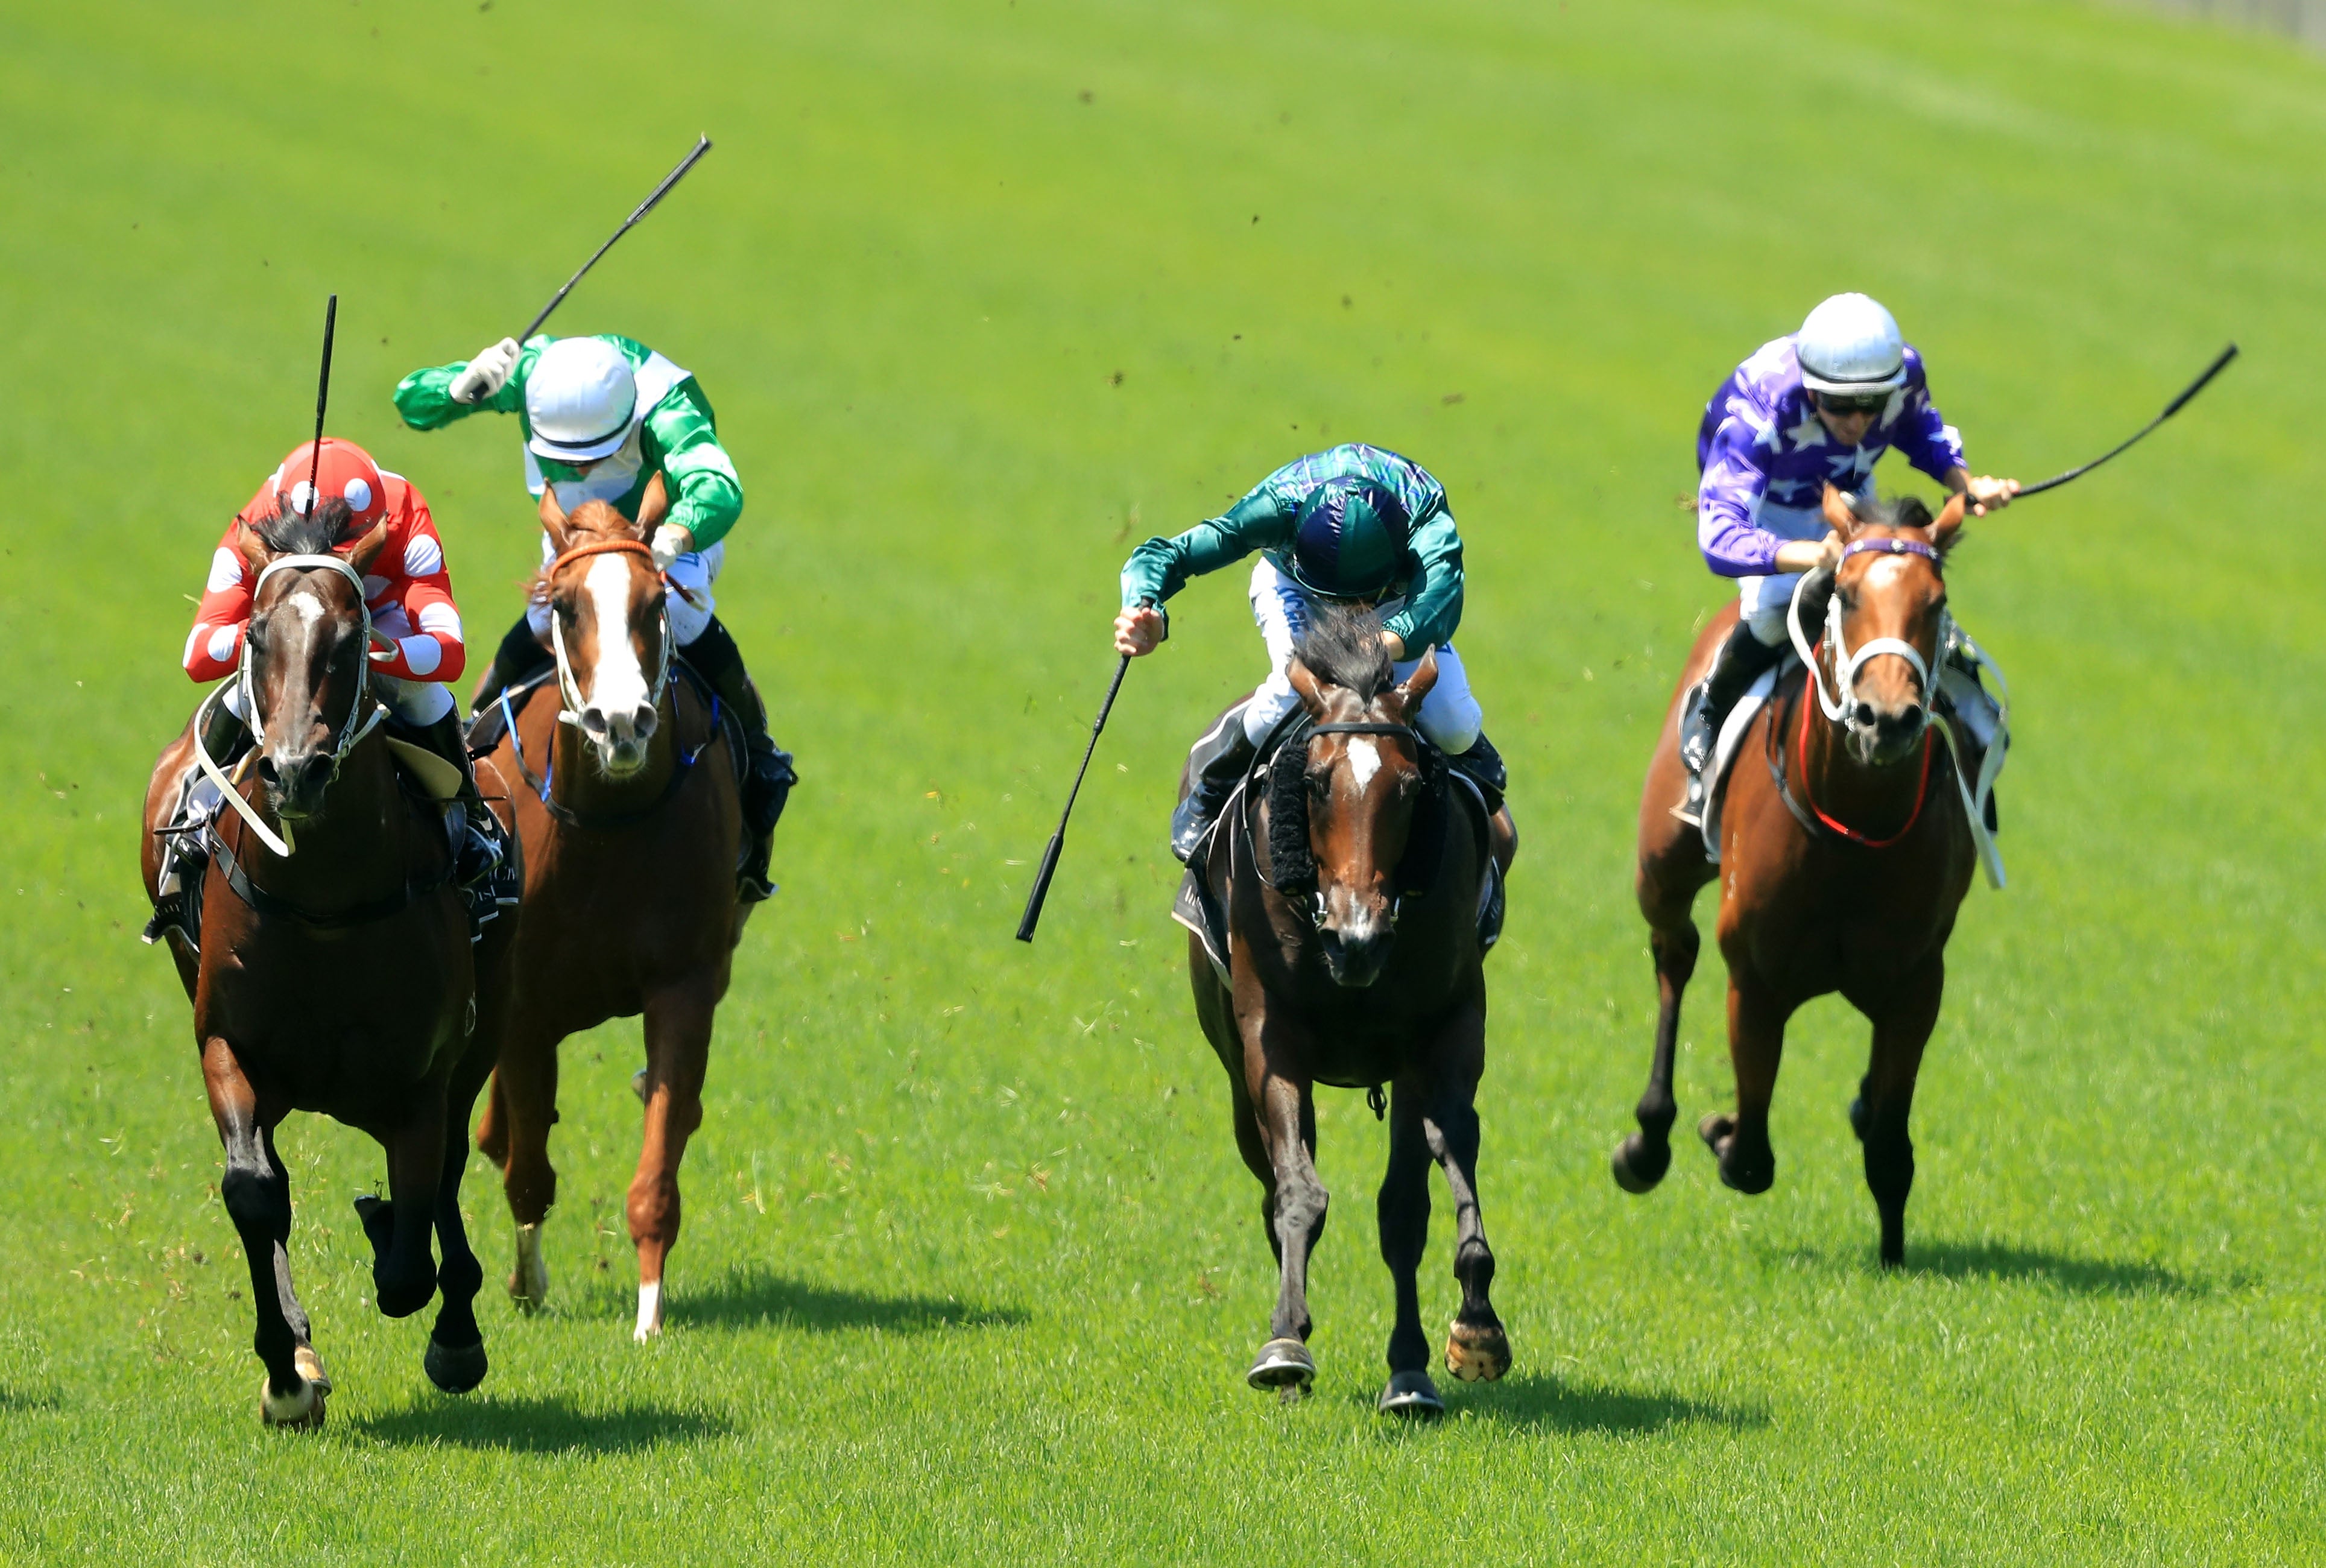 Jockeys whip their horses during a race in Sydney, Australia